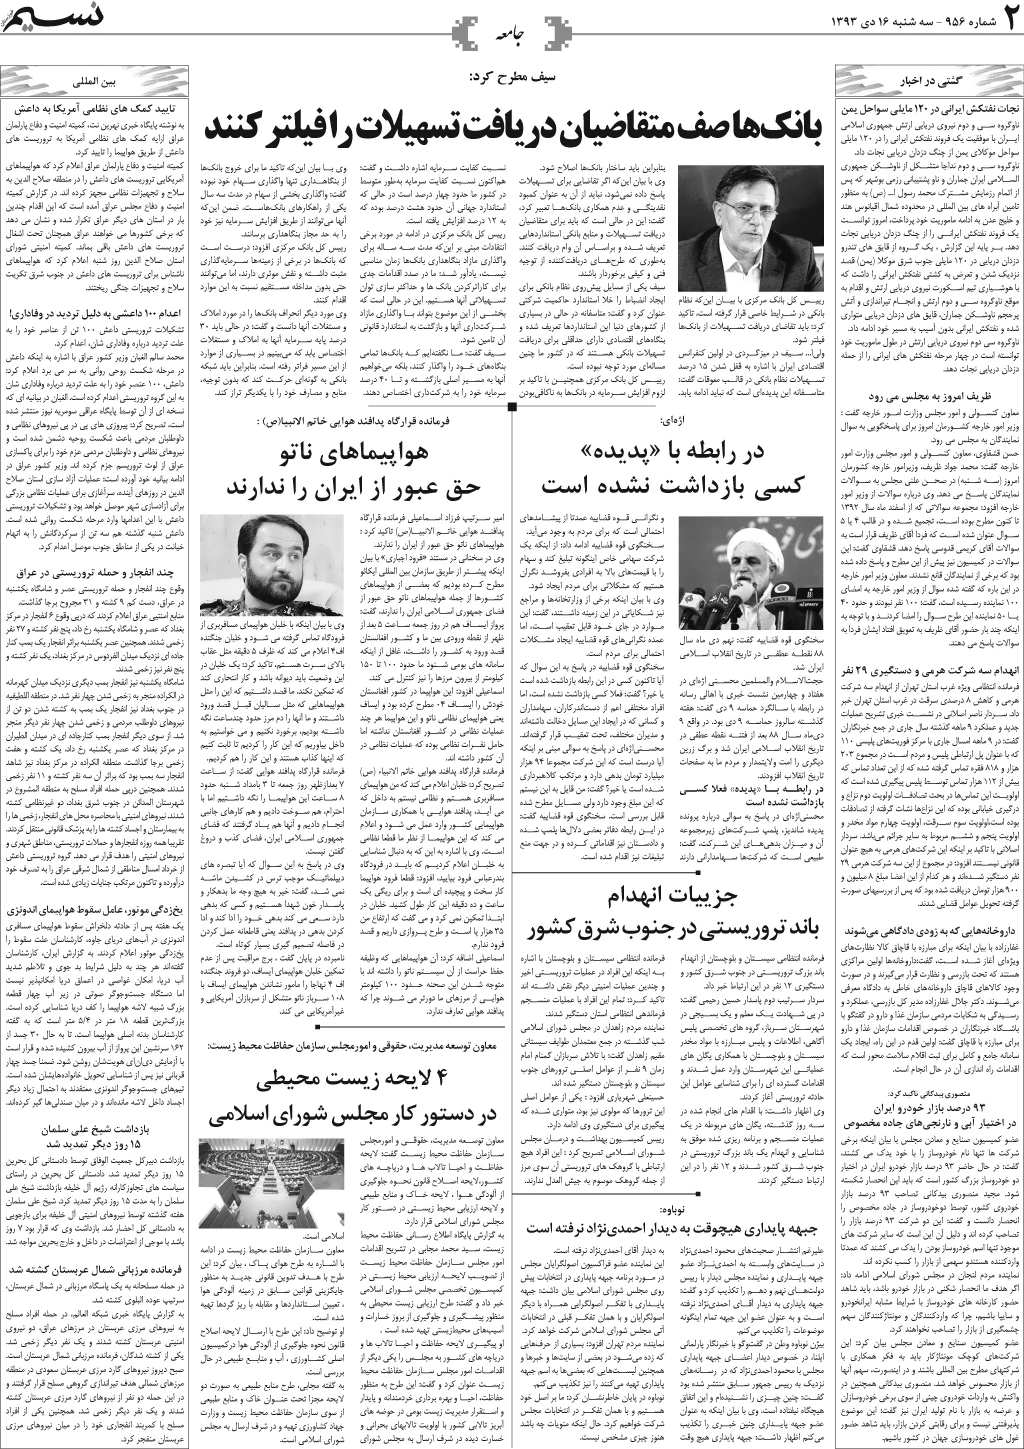 صفحه جامعه روزنامه نسیم شماره 956